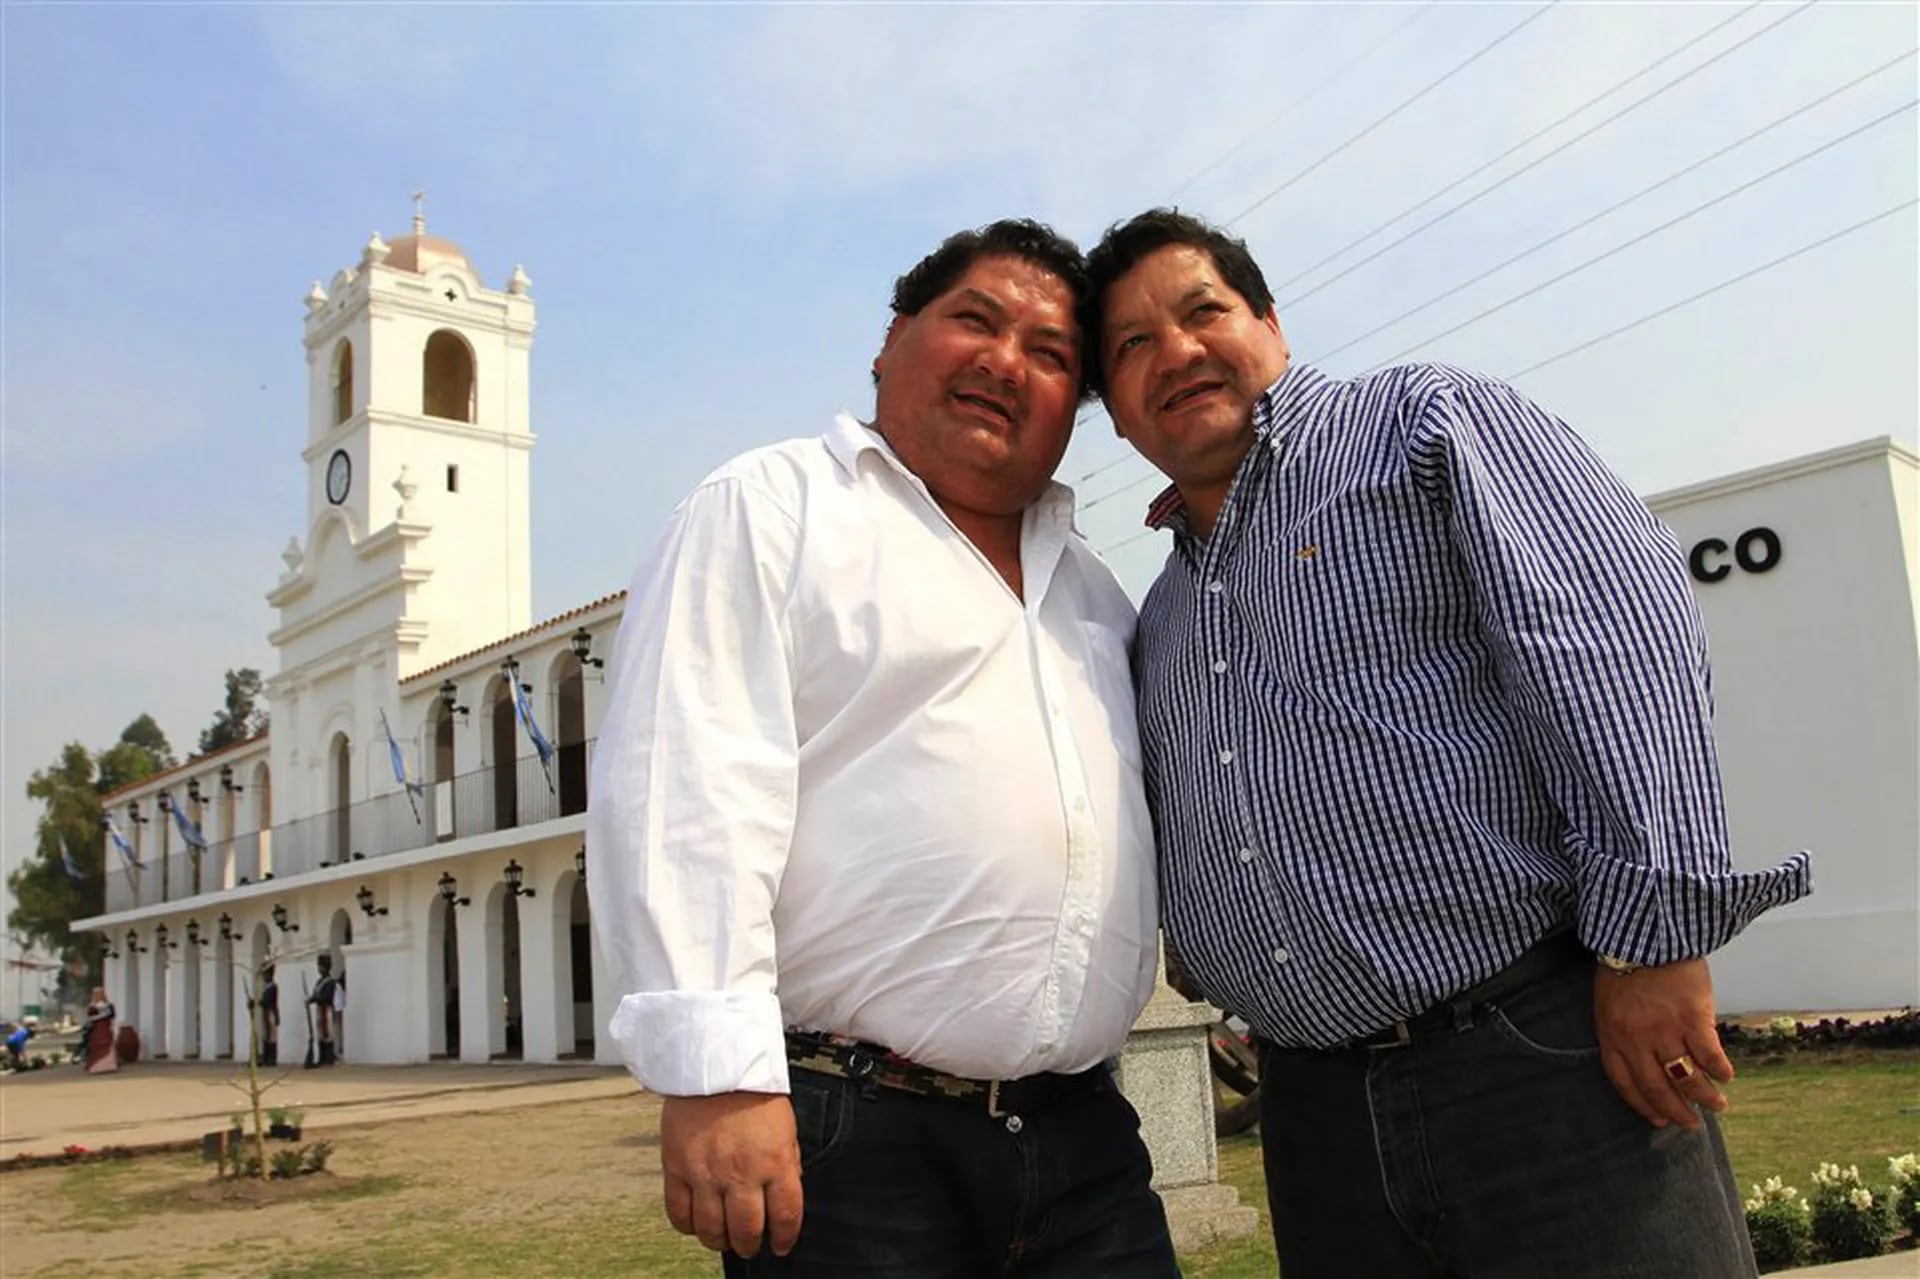 El doble comando. Los mellizos José y Enrique Orellana son peronistas y alternan el gobierno de Famaillá desde 1991. Crearon atracciones turísticas de lo más excéntricas.